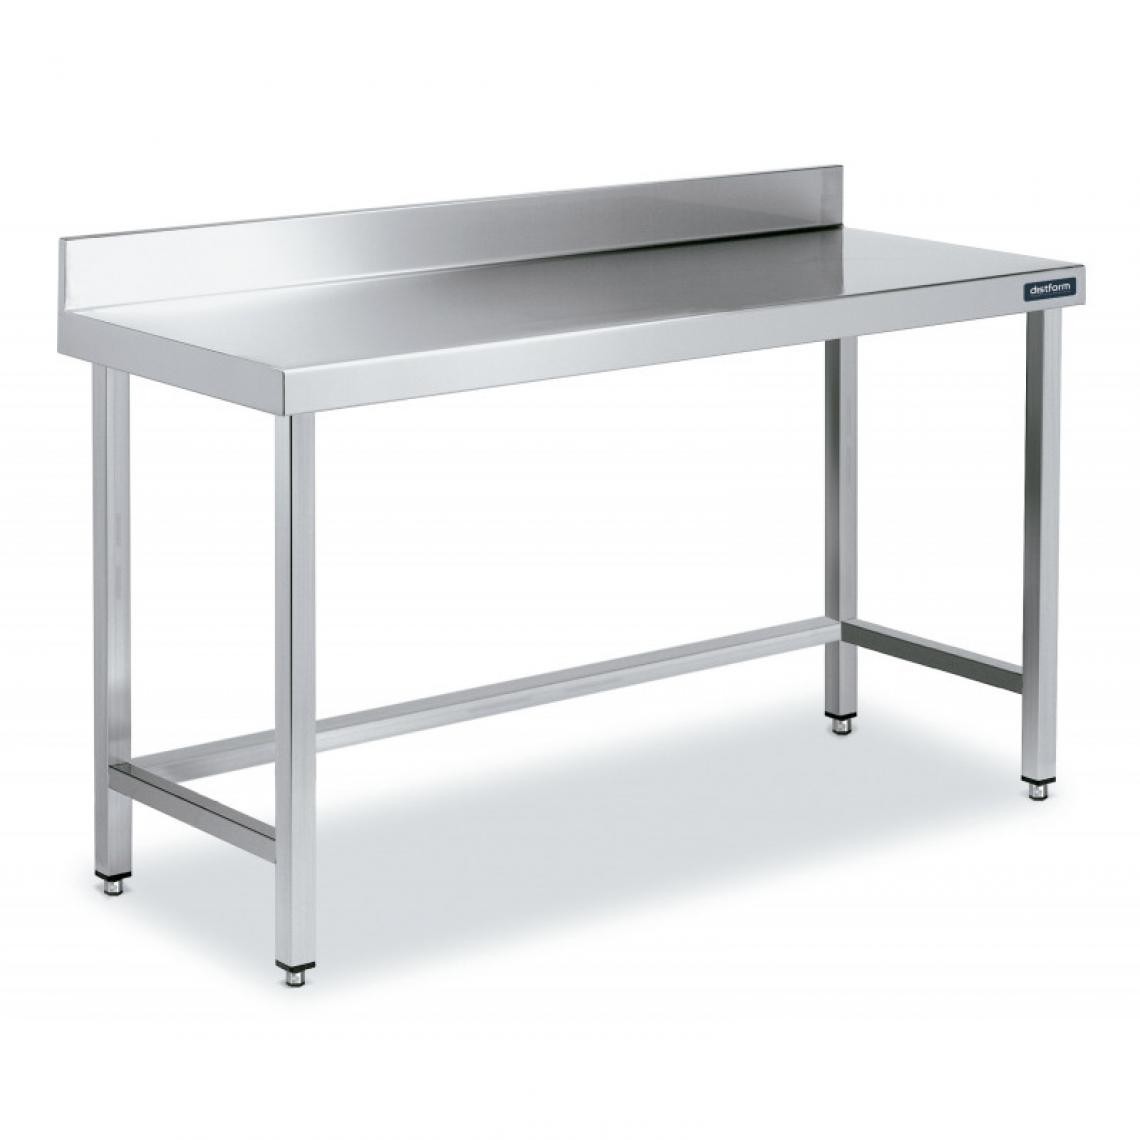 DISTFORM - Table Adossée en Inox avec Renforts Profondeur 600 mm - Distform - Acier inoxydable2400x600 - Tables à manger